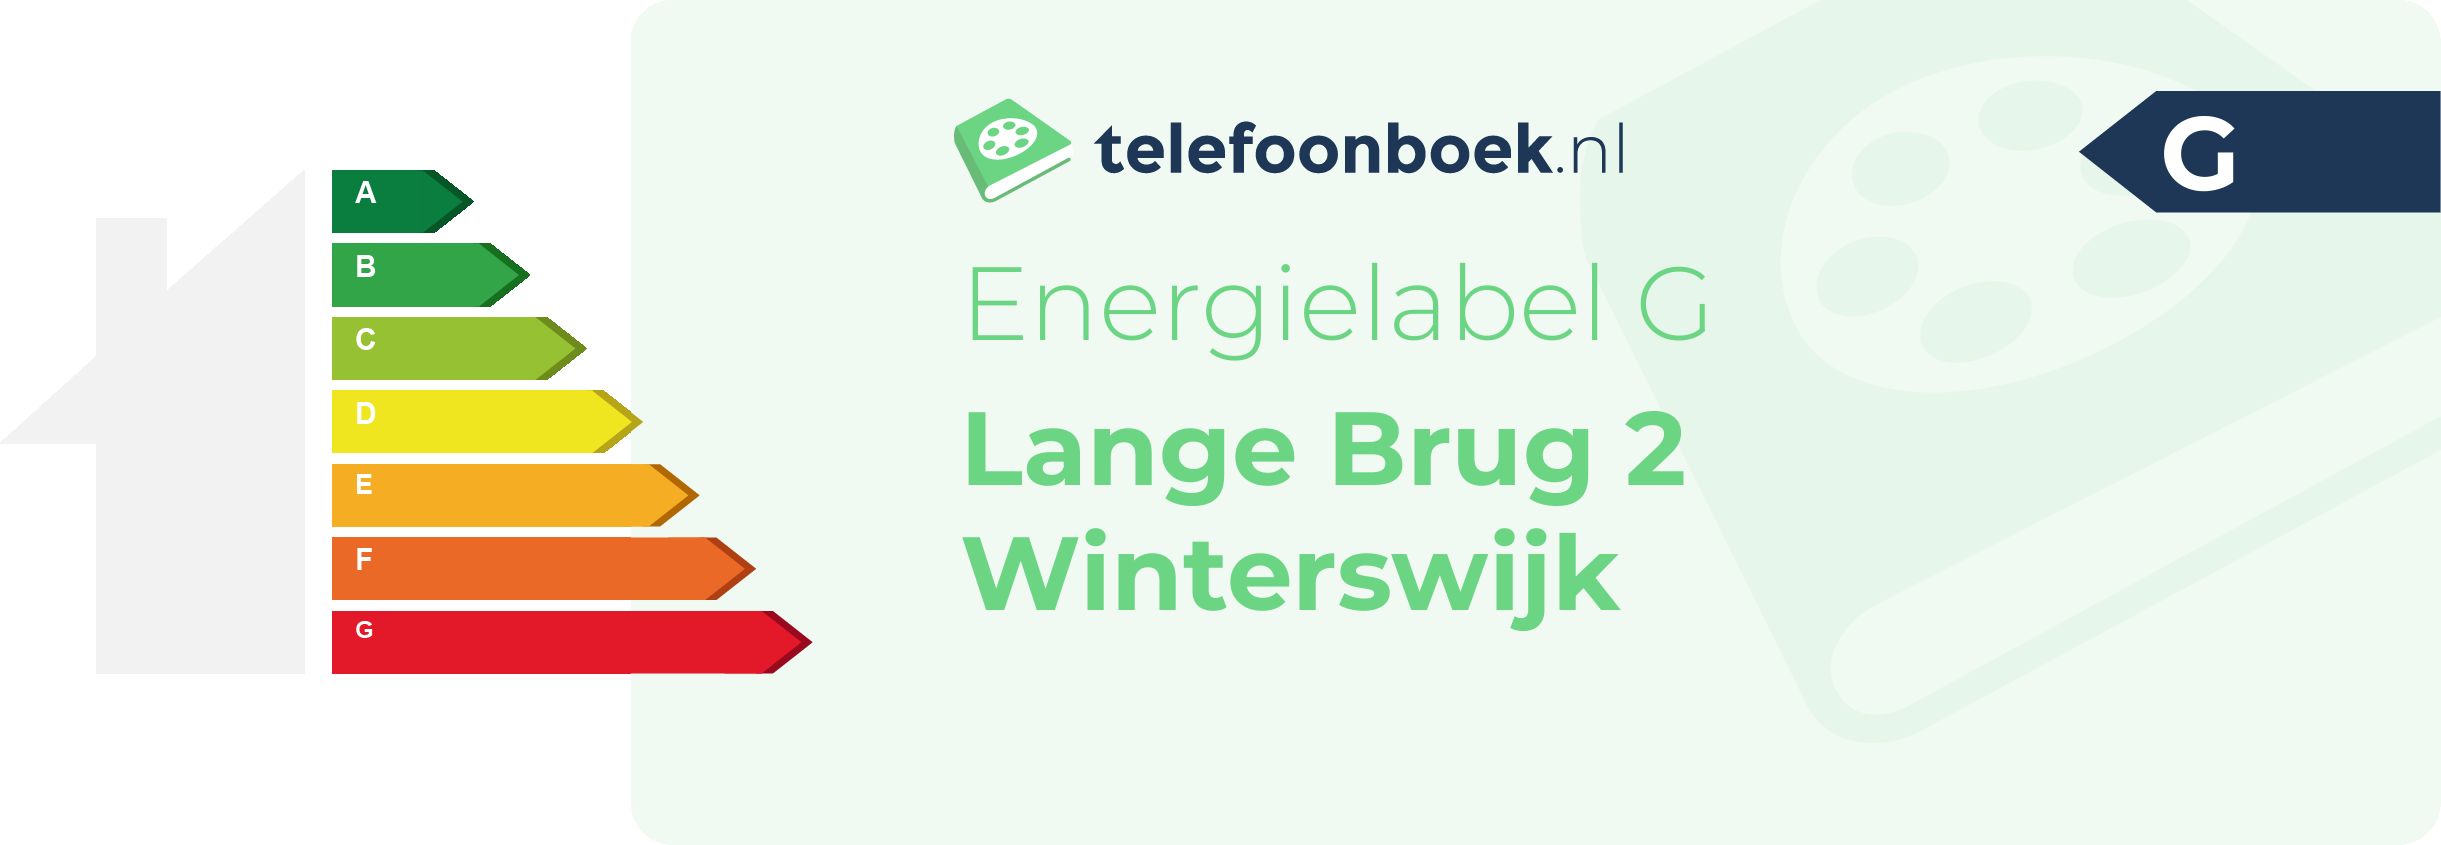 Energielabel Lange Brug 2 Winterswijk